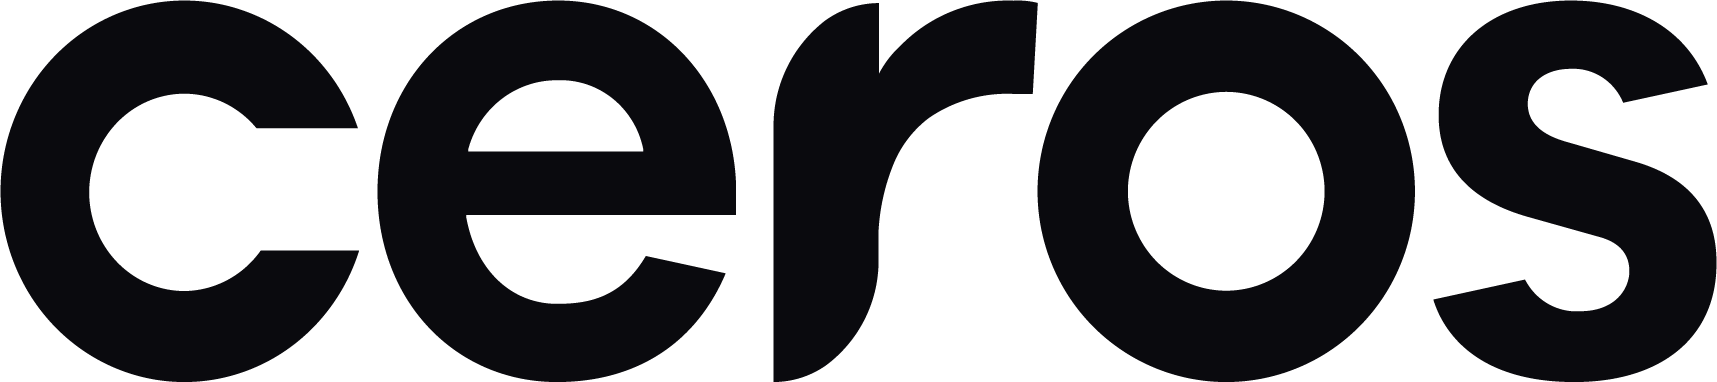 2022-ceros-logo-large-black (1)